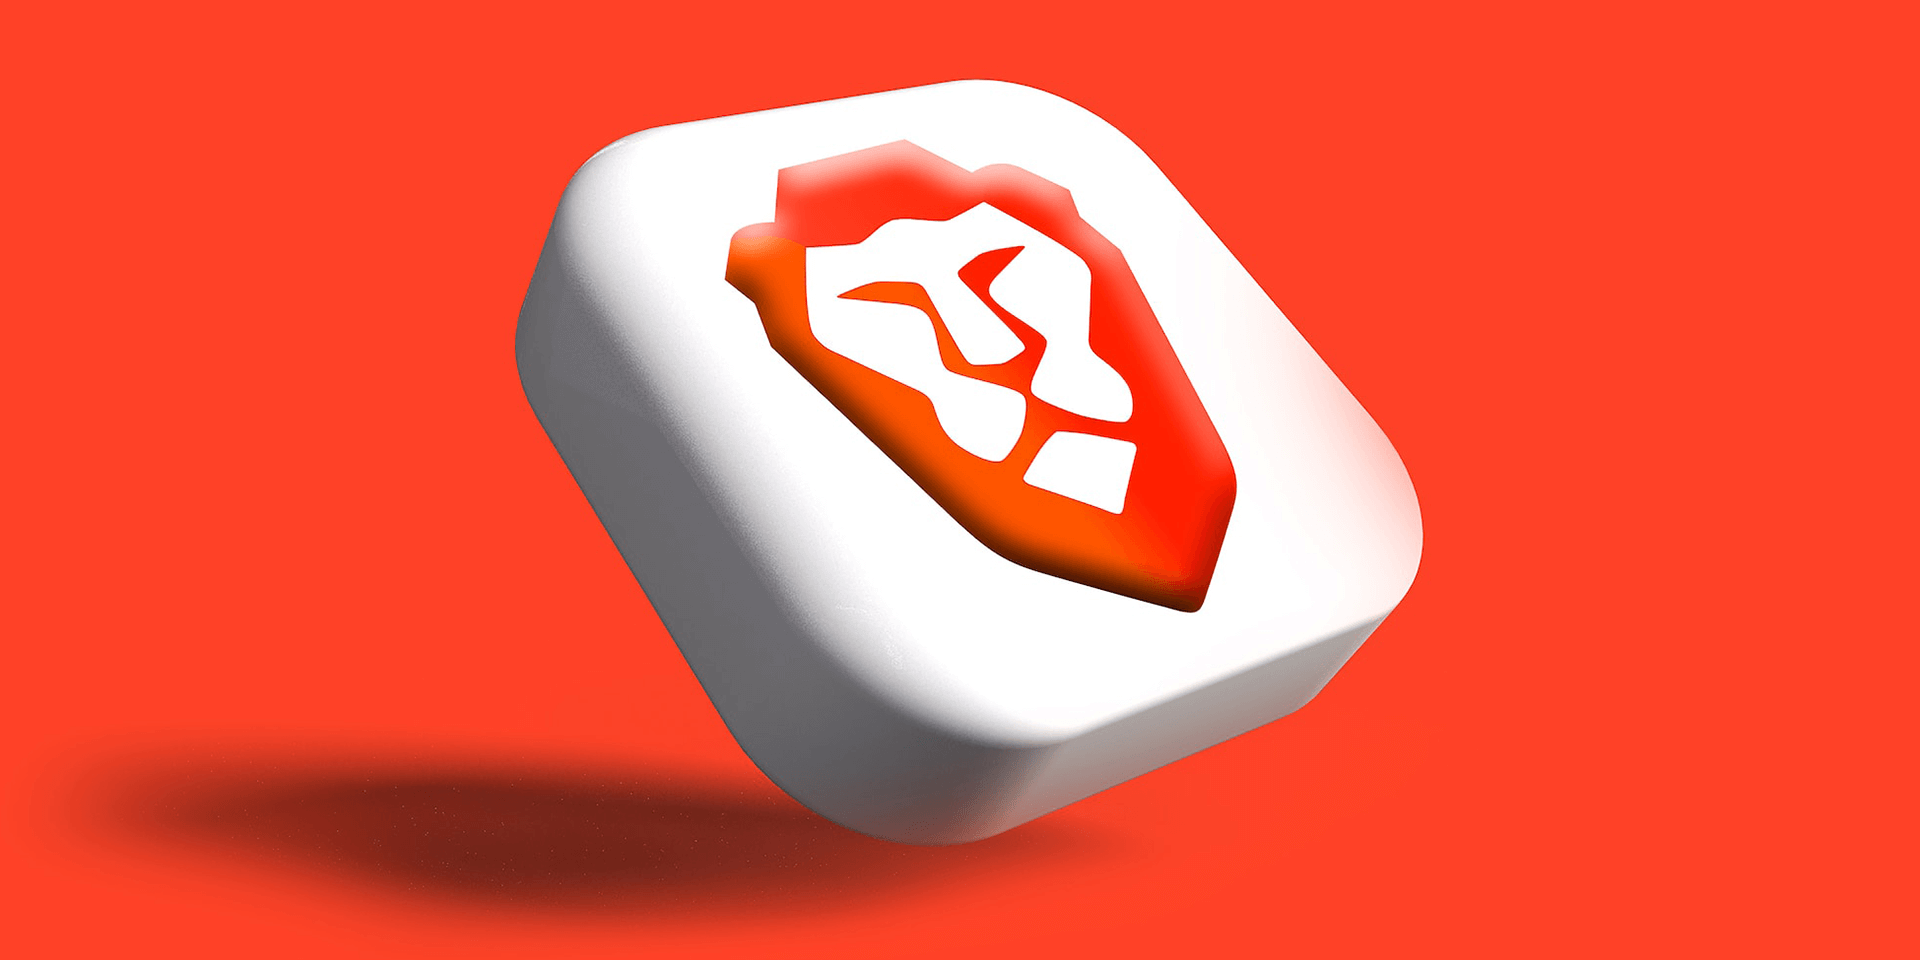 Brave web browser logo on an orange background.